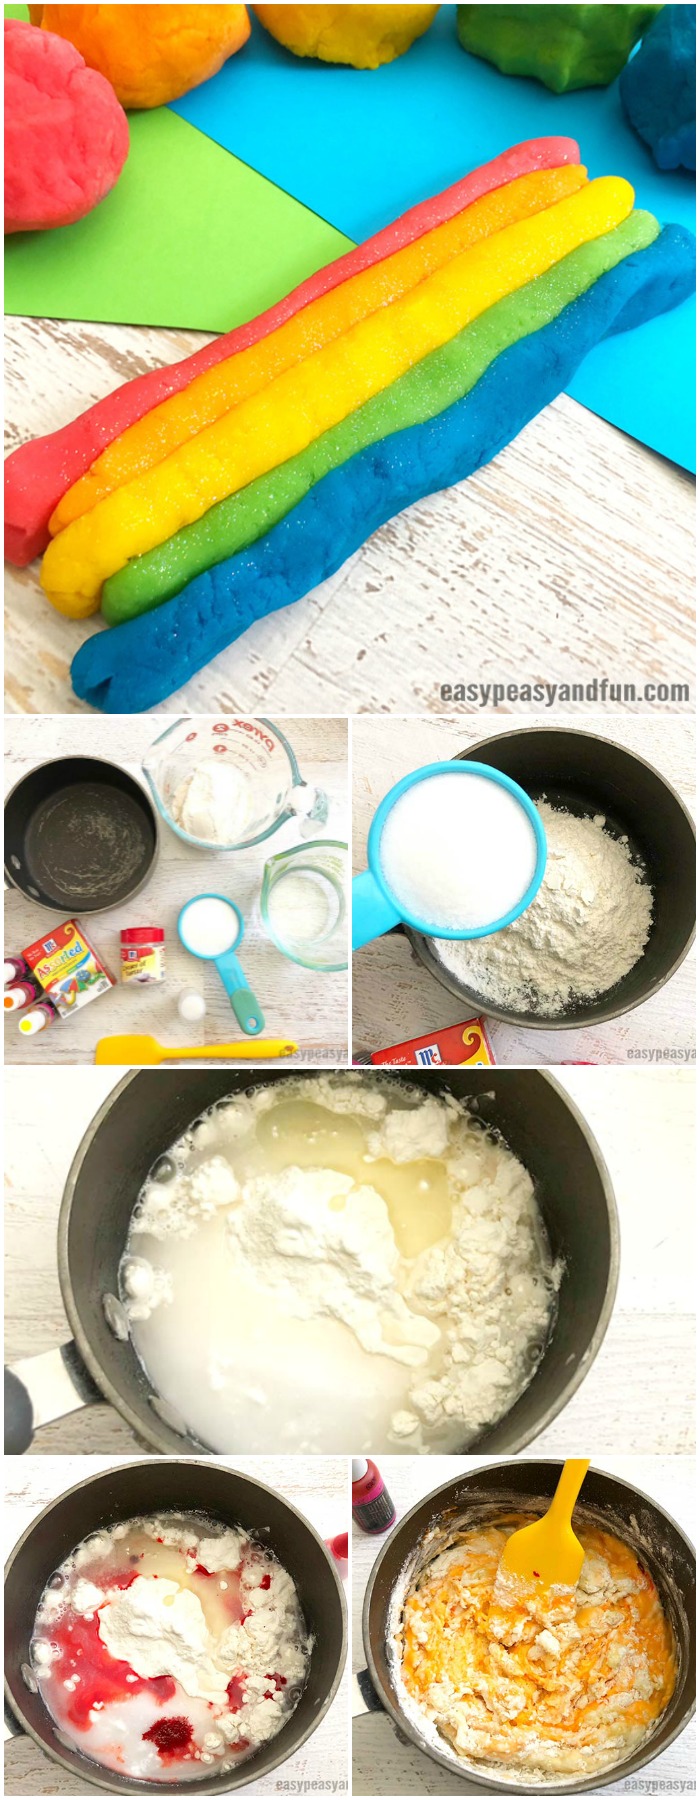 Rainbow Playdough Modeling Dough How To Make A Recipe #homemadeplaydough #PlaydoughRecipe #playdough